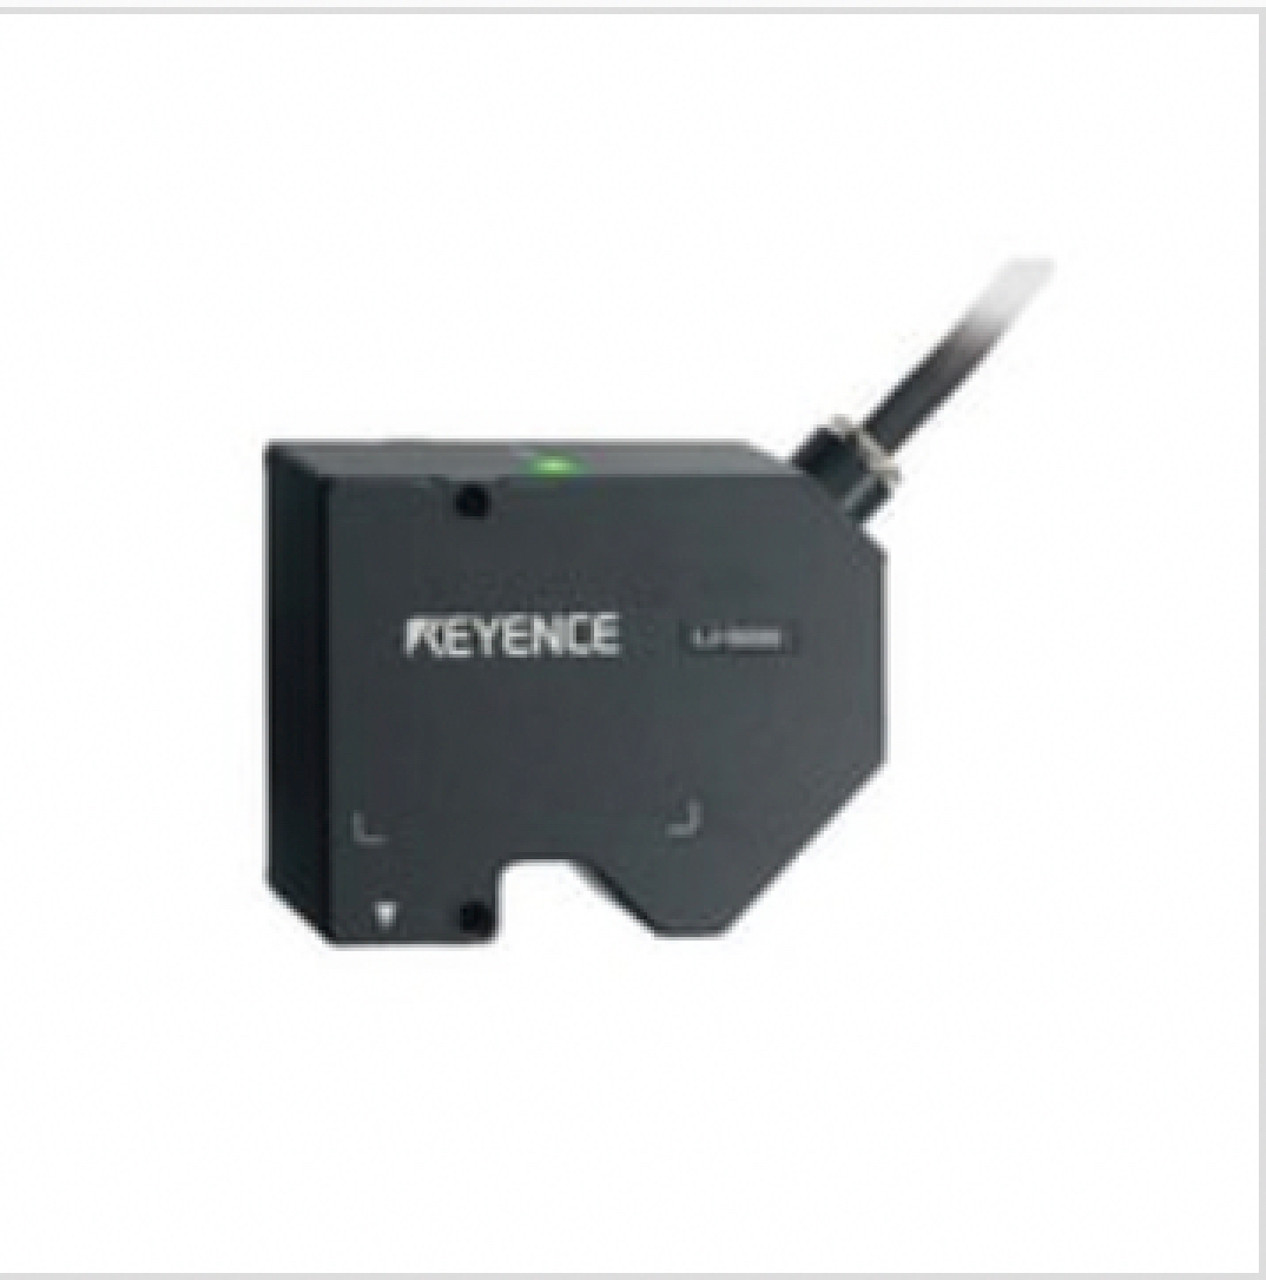 Keyence LJ-G030 2D Laser Displacement Sensor, Sensor Head [Refurbished]